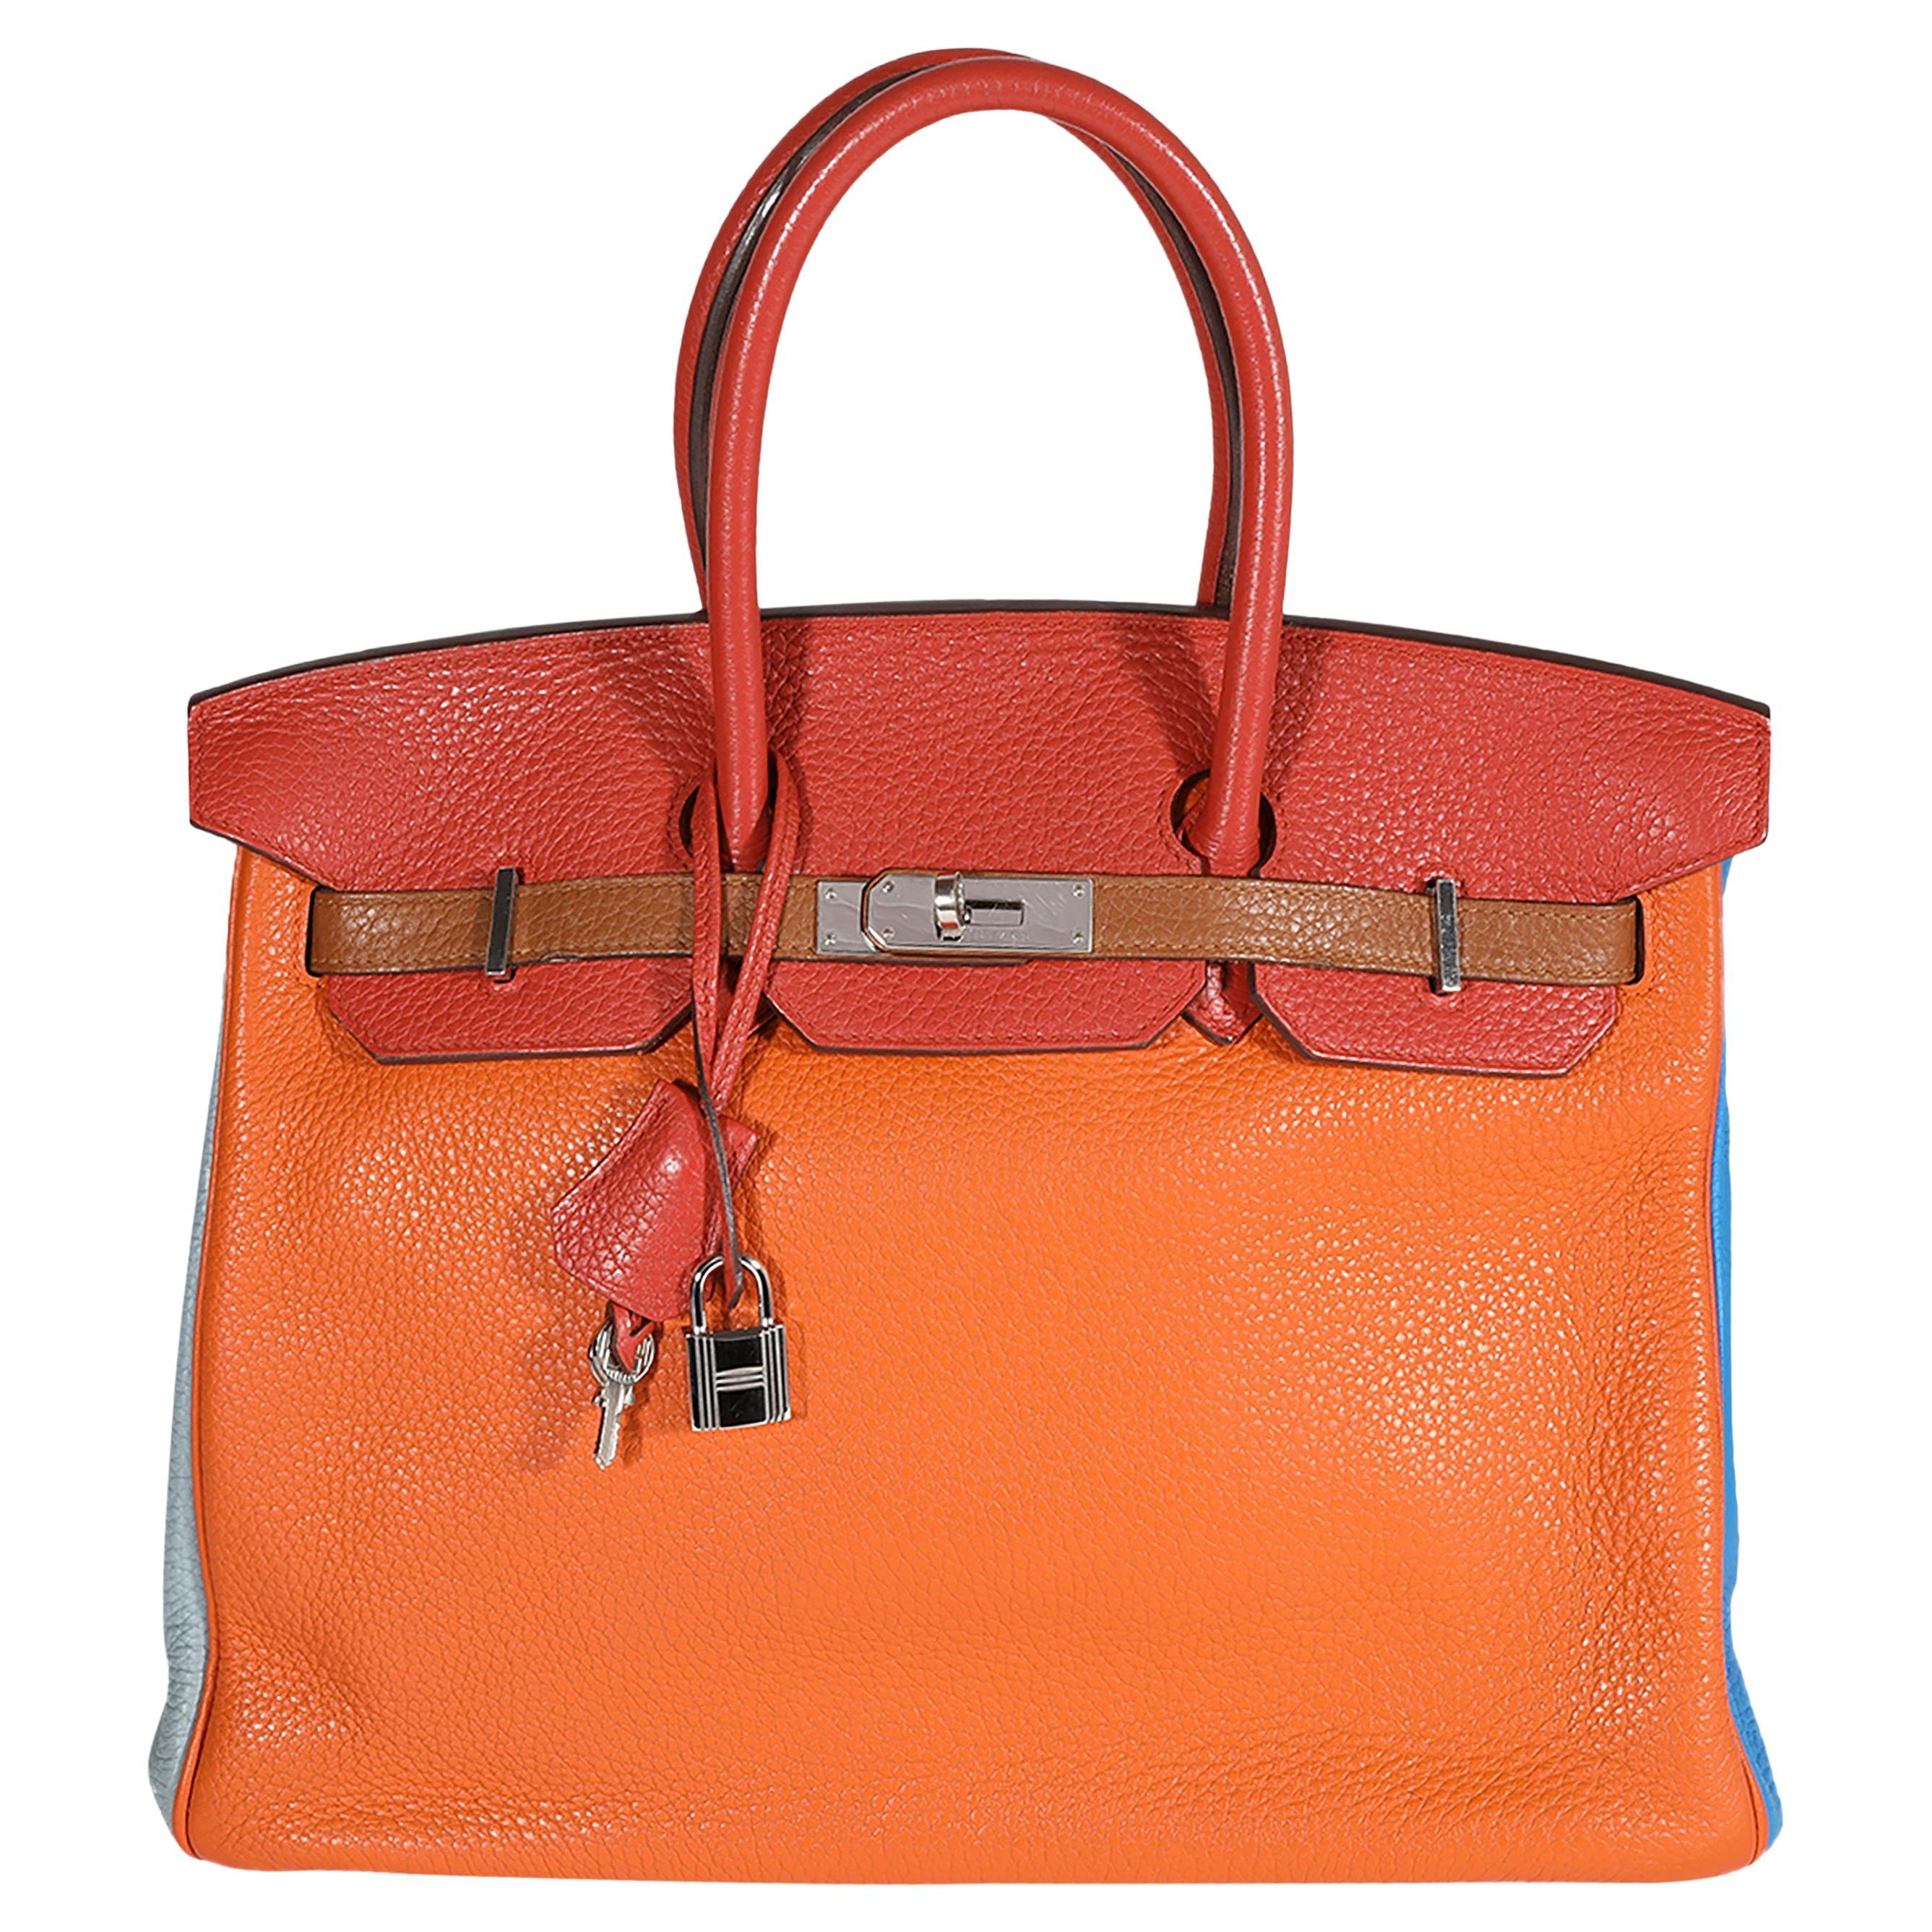 Hermès Orange Ostrich Skin 35 cm Birkin Bag with Gold Hardware at ...